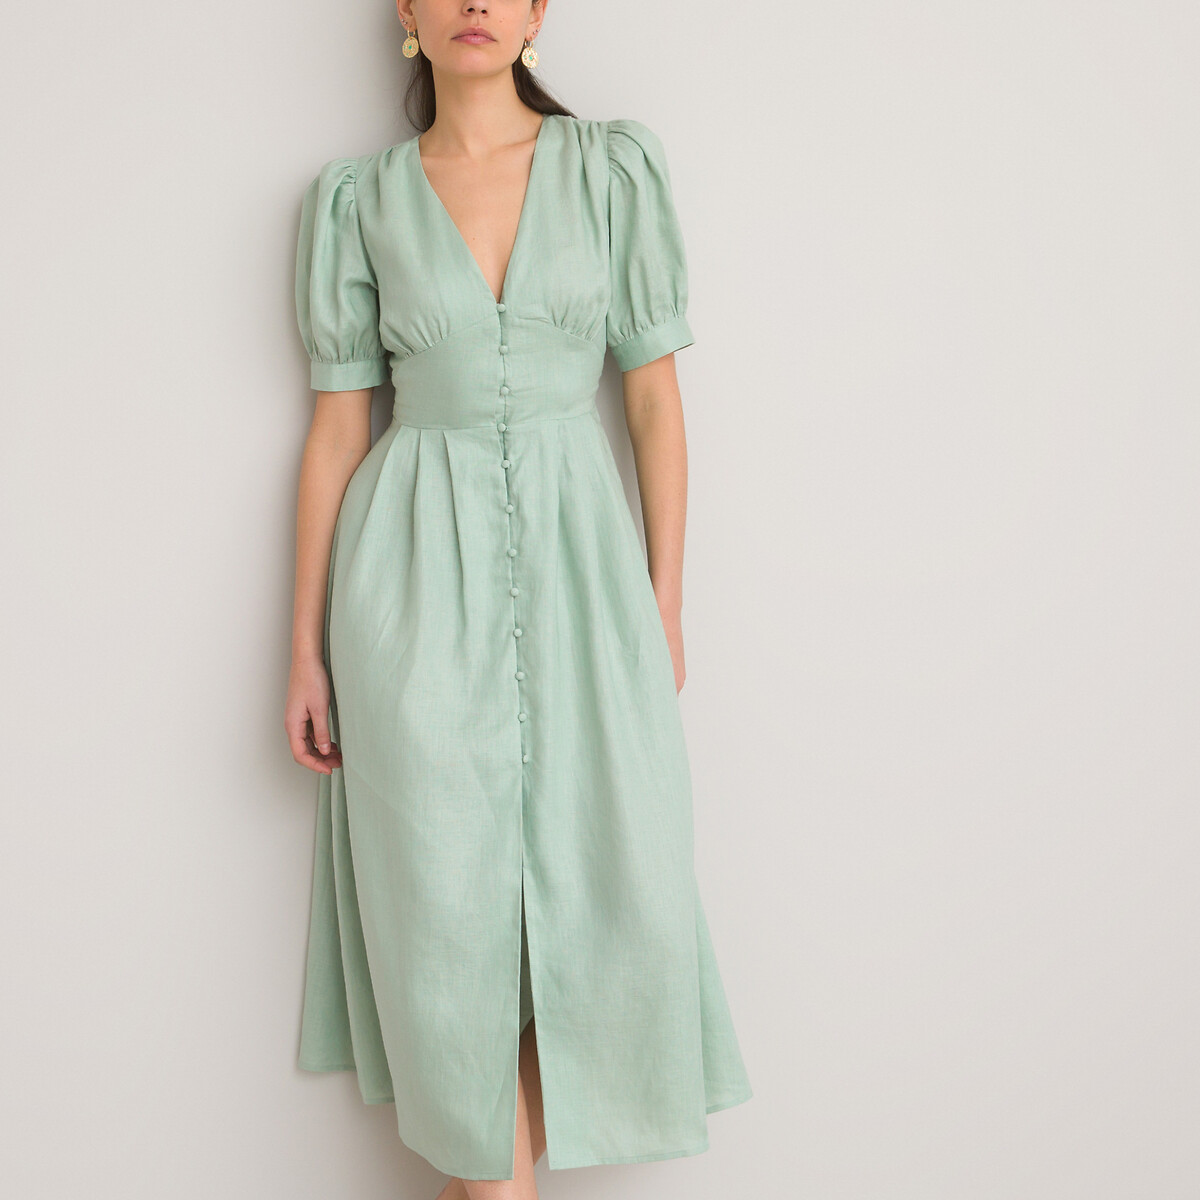 Платье LA REDOUTE COLLECTIONS Из льна длинное V-образный вырез короткие рукава 48 зеленый, размер 48 - фото 1